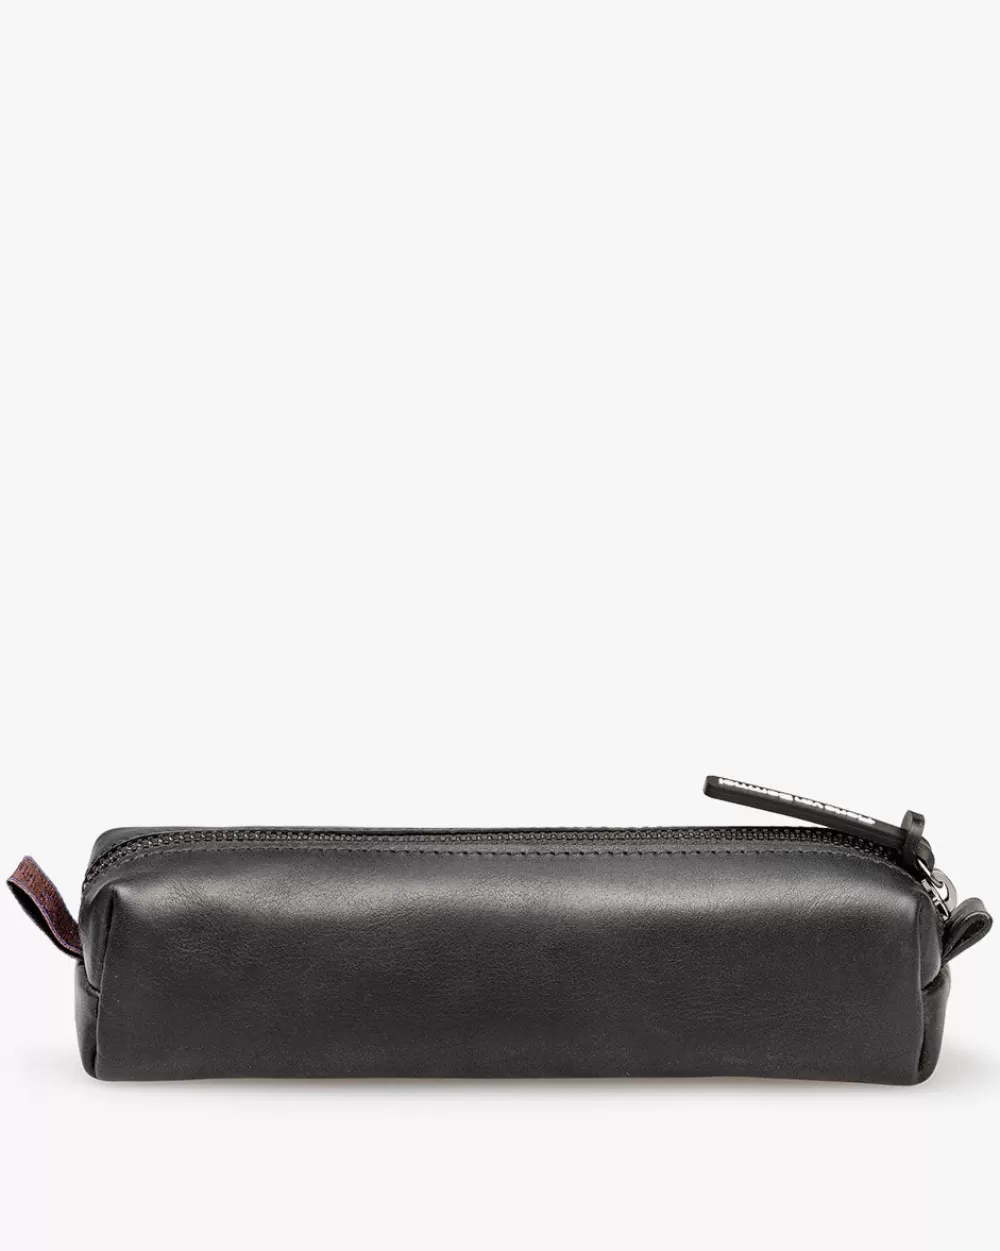 Pencil pounch leather *Floris van Bommel Shop